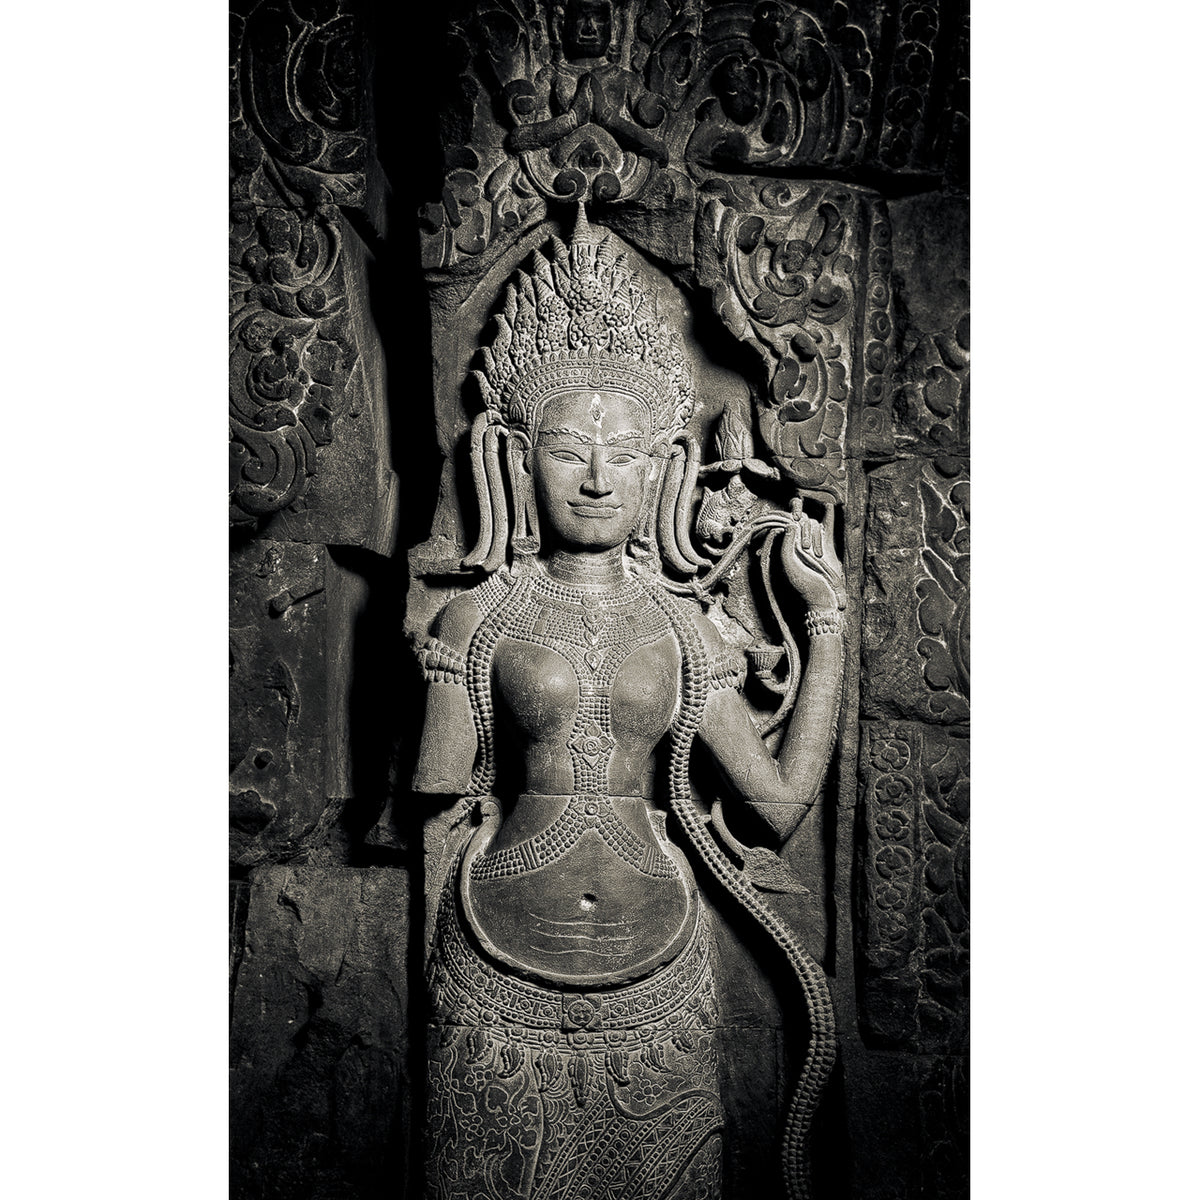 Queen Indradevi, Preah Khan Temple, Angkor, Cambodia. 2021